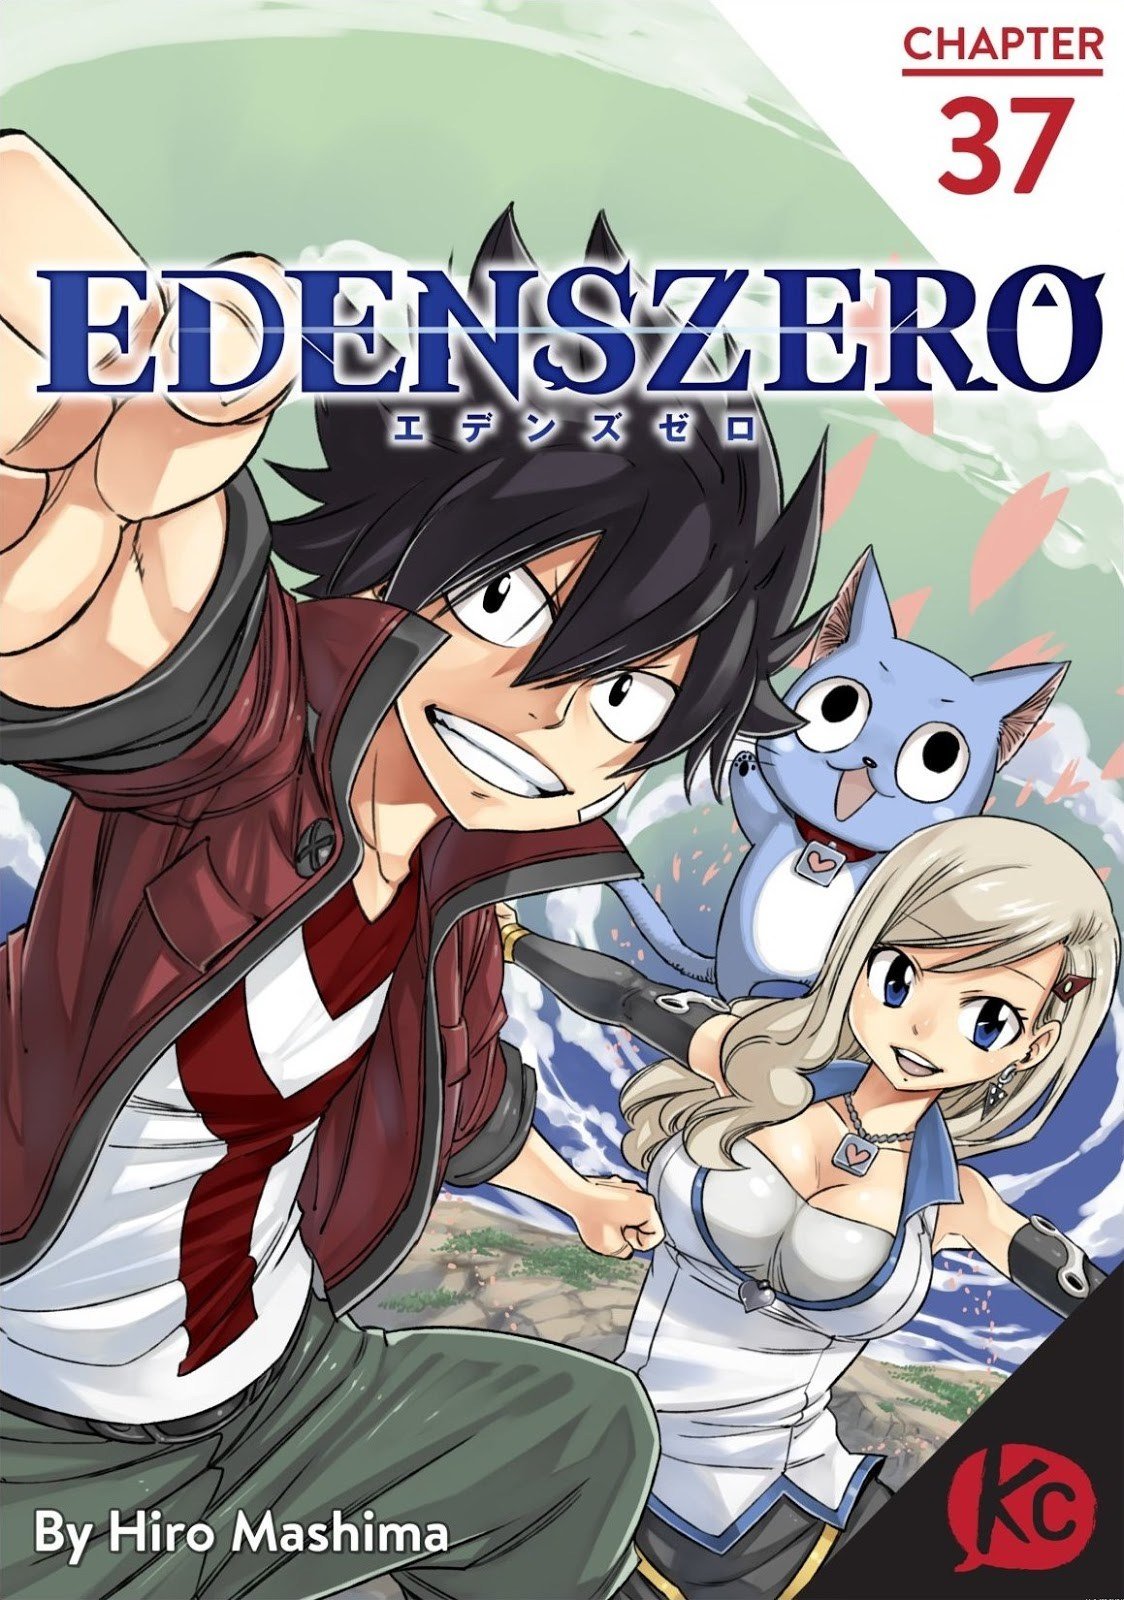 Eden’s Zero Chapter 37